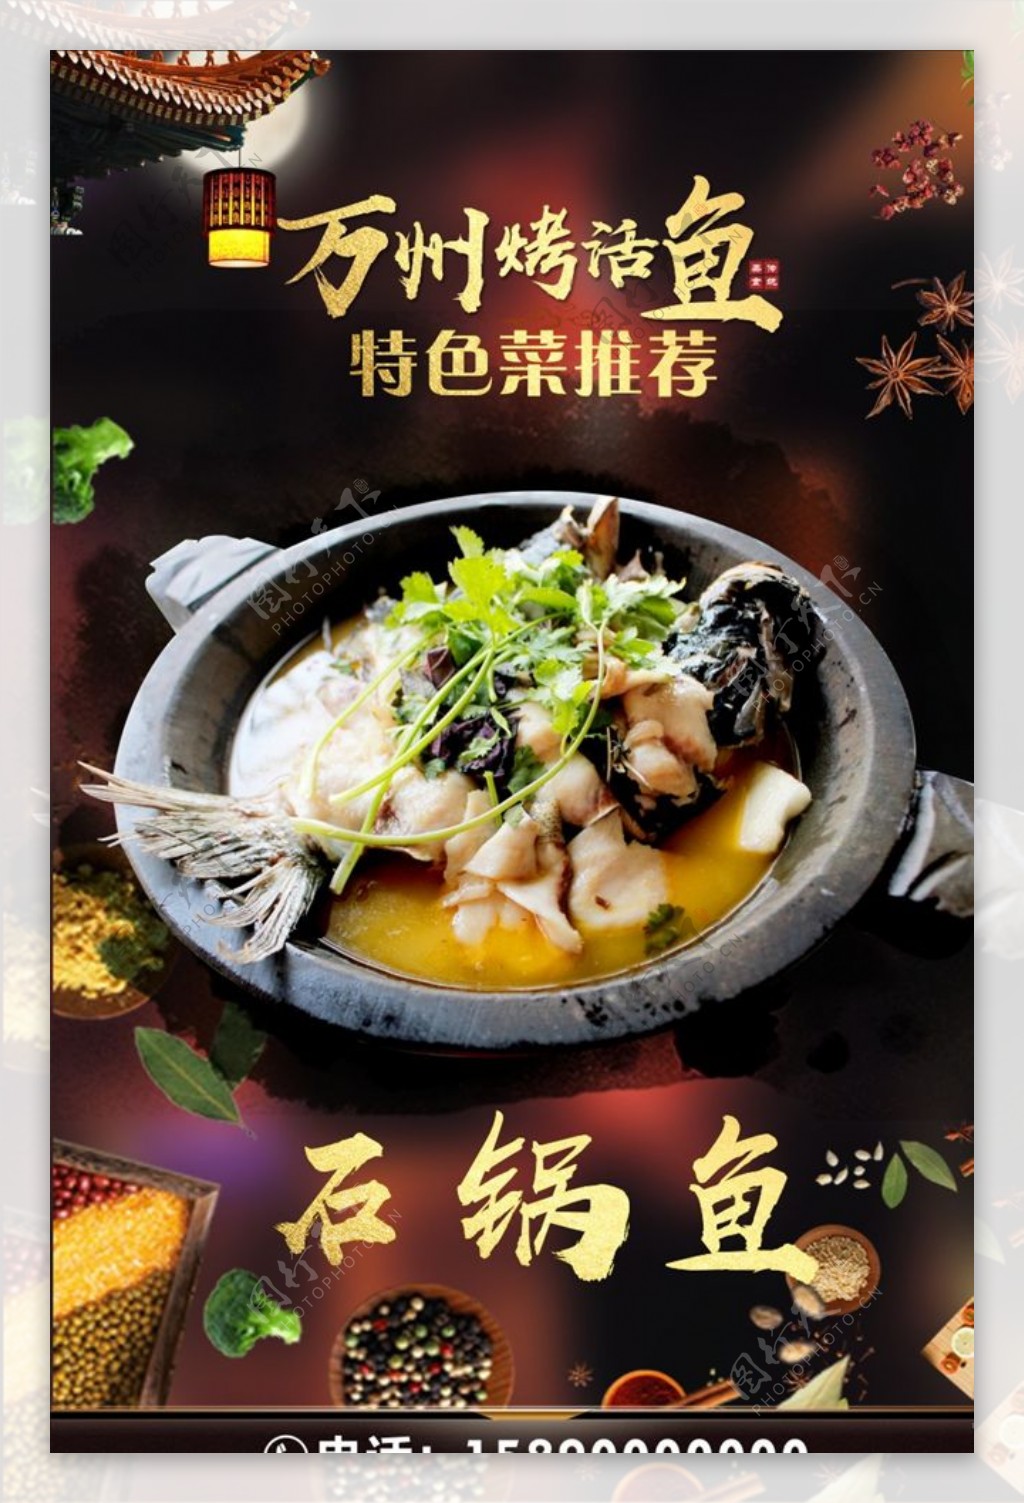 2023渔老大石锅鱼美食餐厅,到抚仙湖必吃石锅鱼/铜锅鱼还...【去哪儿攻略】